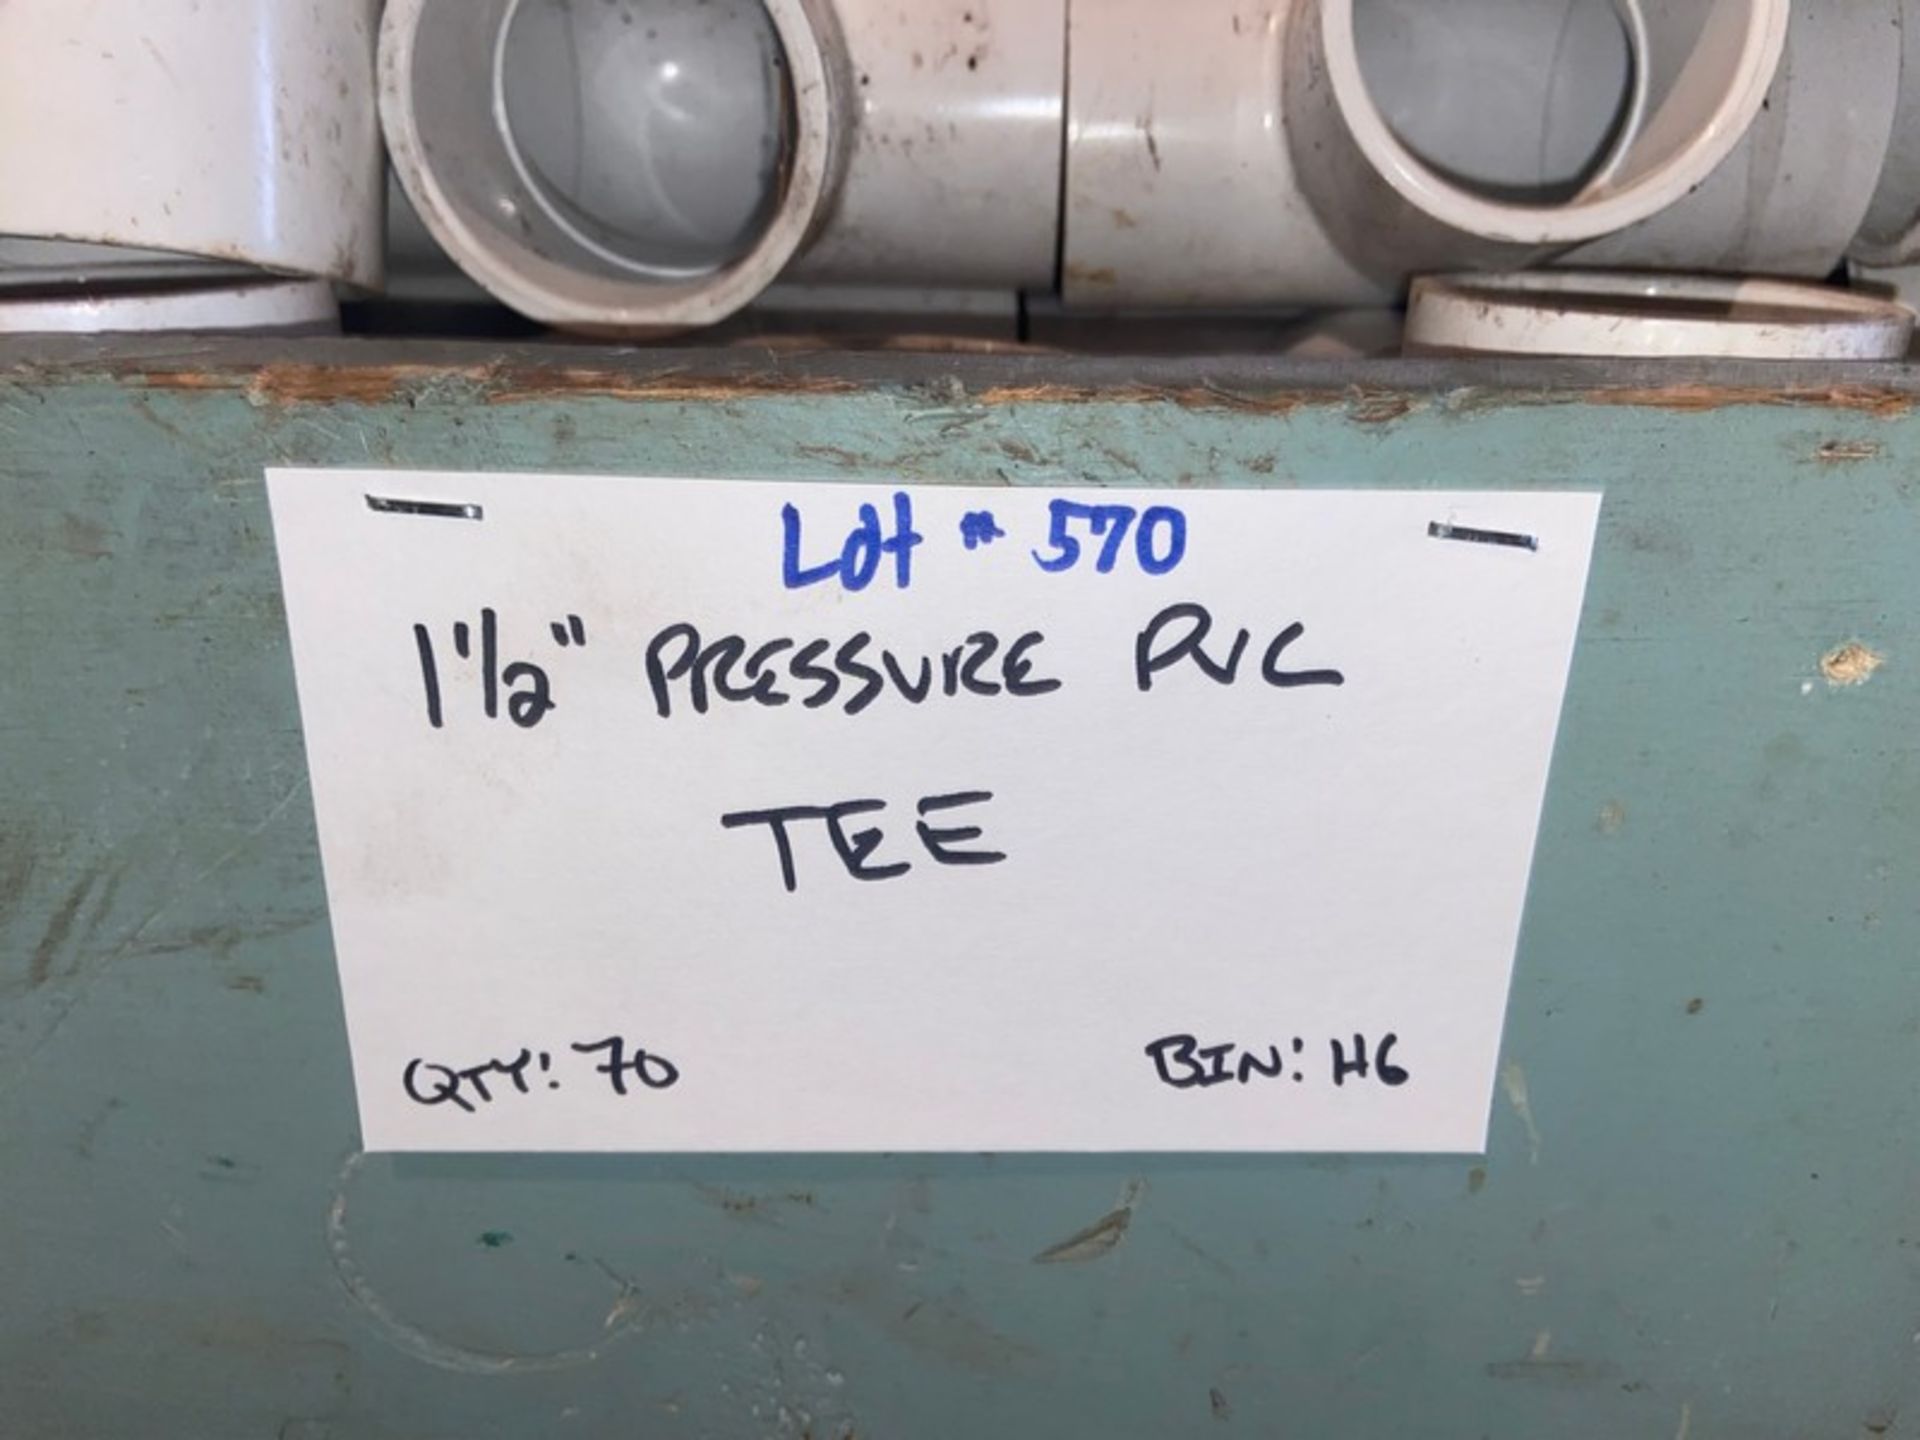 (70) 1-1/2" Pressure PVC Tee (Bin: H6) (LOCATED IN MONROEVILLE, PA) - Bild 6 aus 6